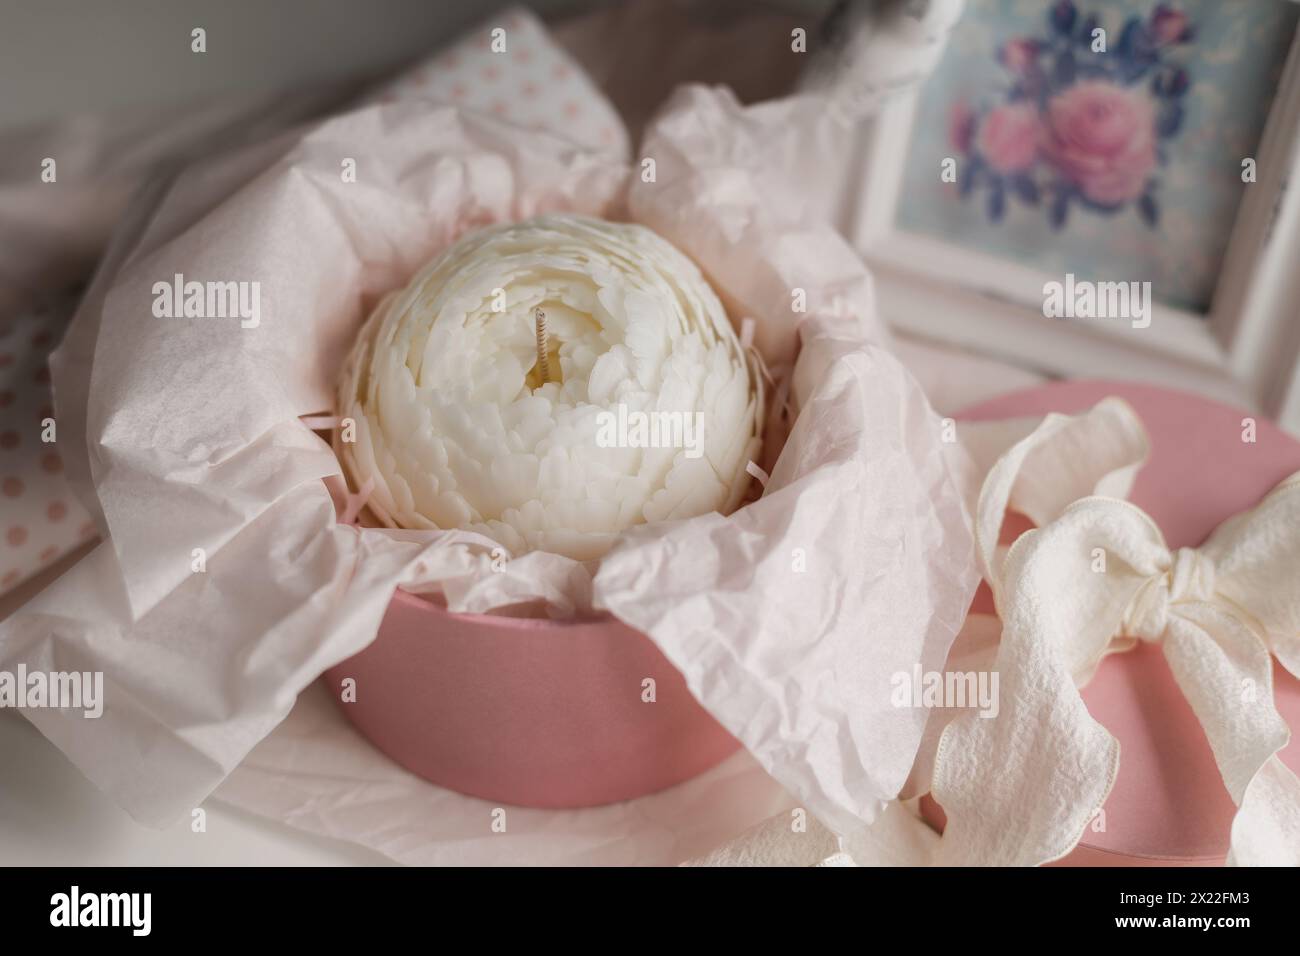 candela fatta a mano a forma di fiore in una confezione regalo. Foto di alta qualità Foto Stock